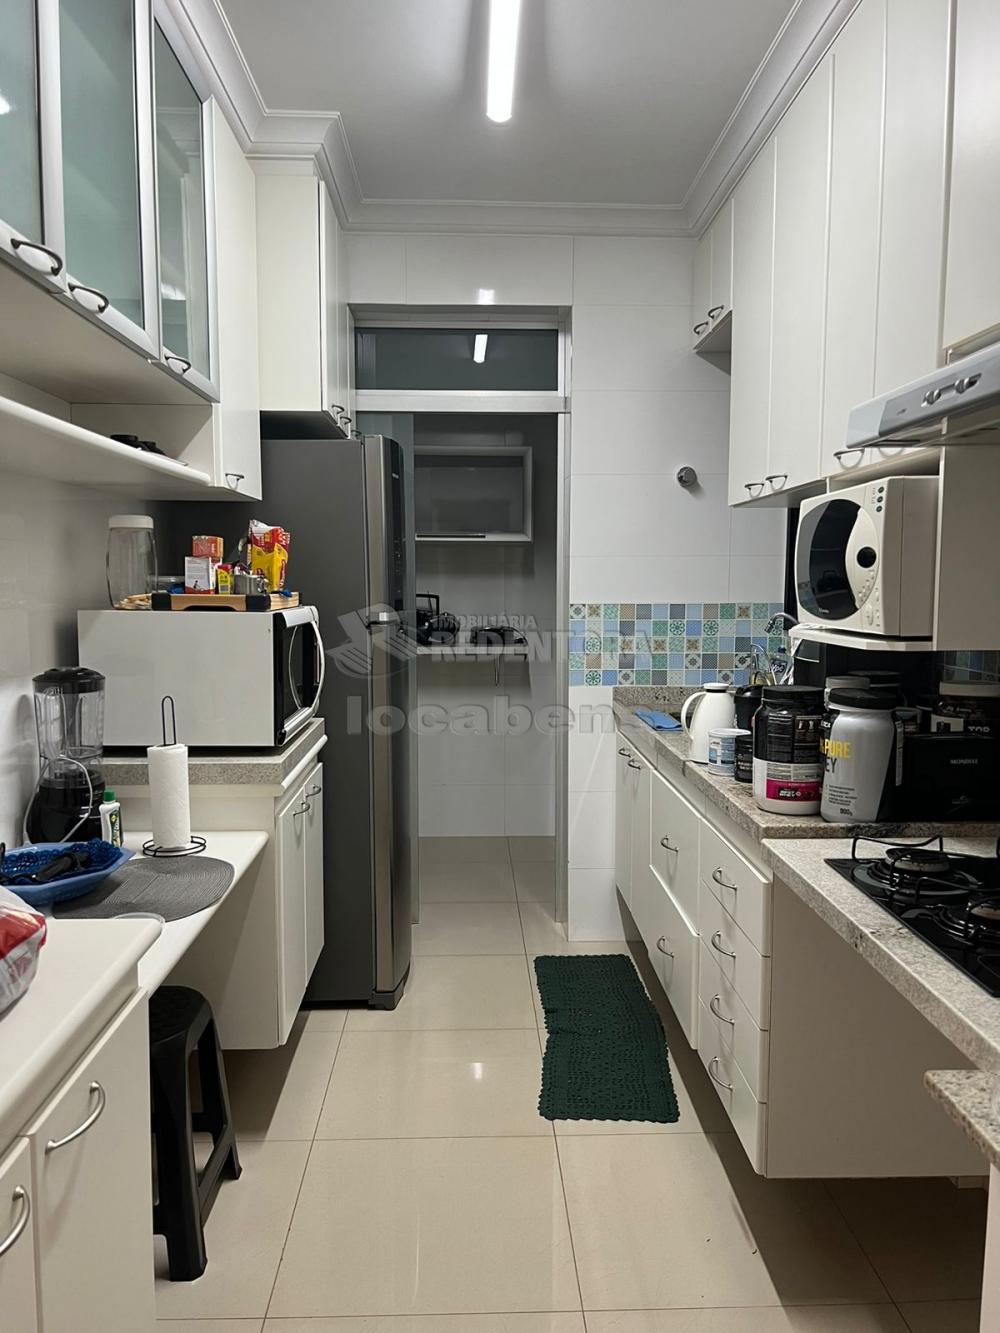 Alugar Apartamento / Padrão em São José do Rio Preto apenas R$ 2.000,00 - Foto 3